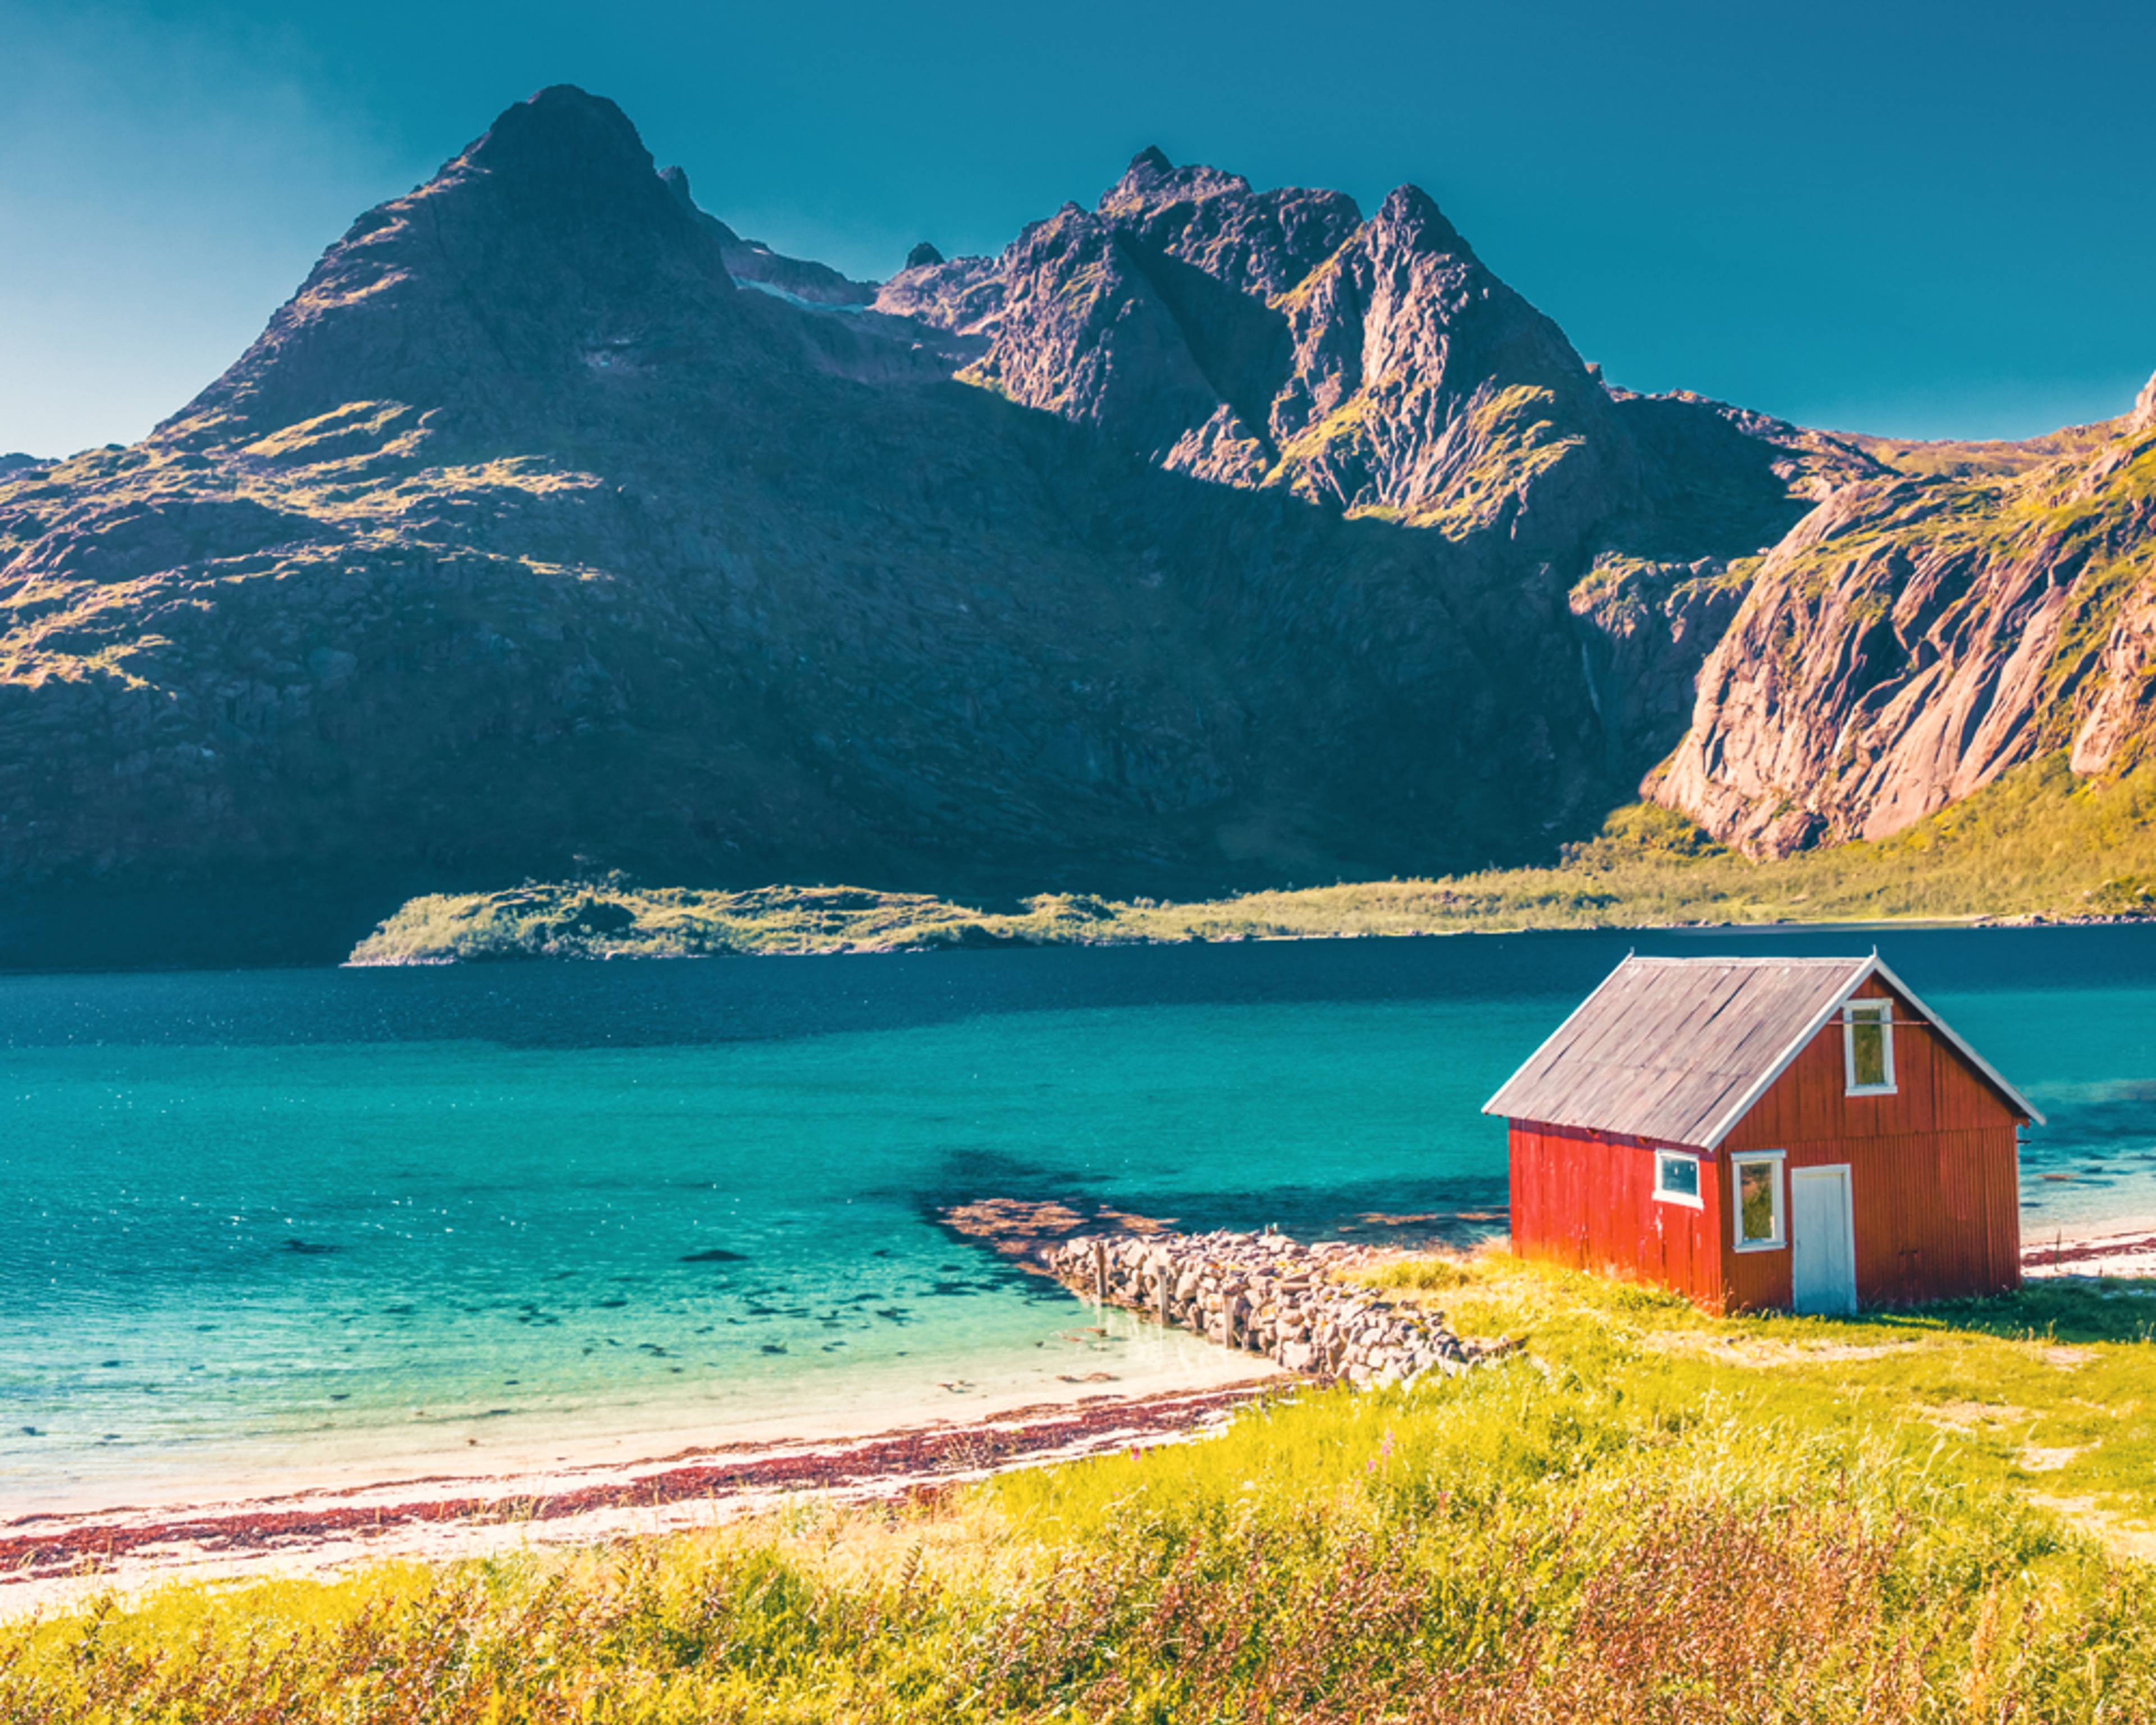 Votre voyage Été en Norvège à la demande